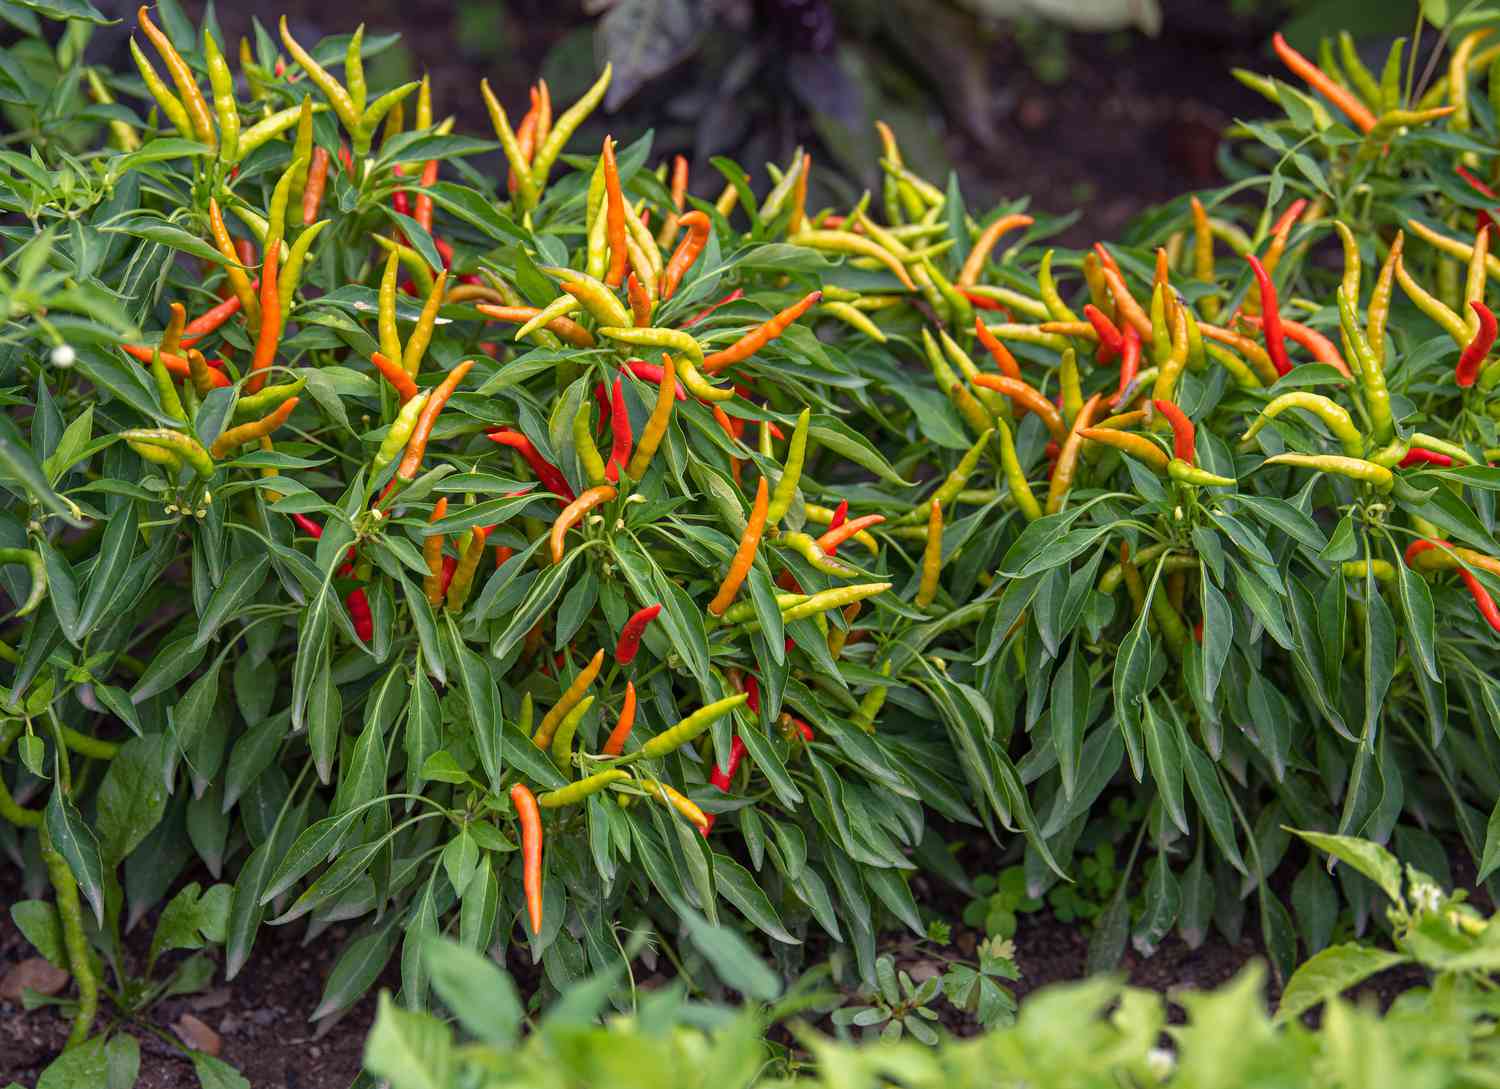 Plantas vegetais de pimenta ornamental com pimentas finas em laranja, amarelo e vermelho sobre folhas longas e finas